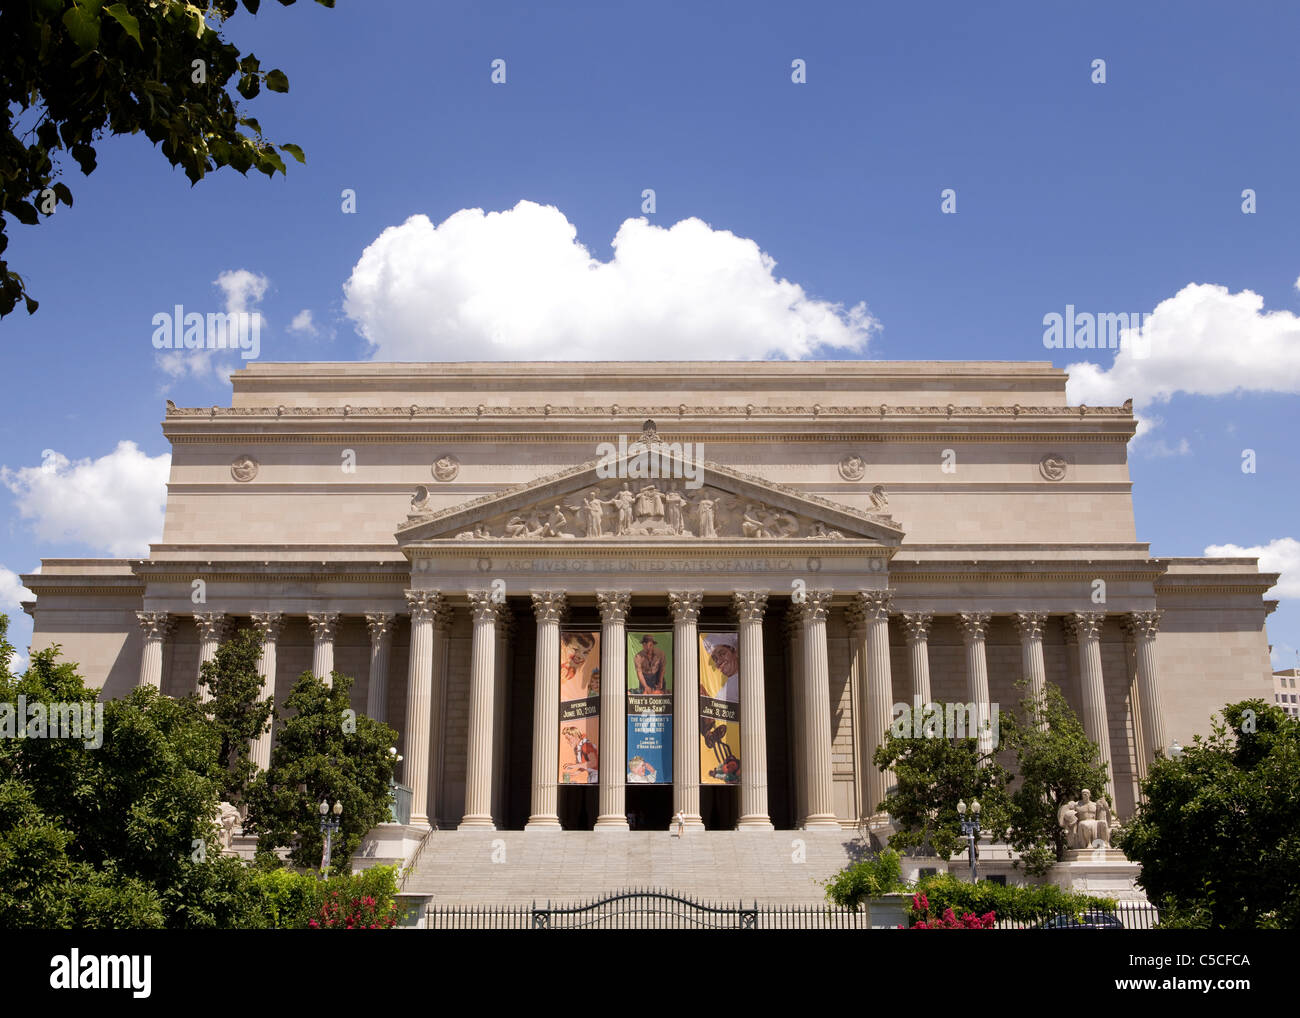 L'édifice des Archives nationales - Washington, DC USA Banque D'Images